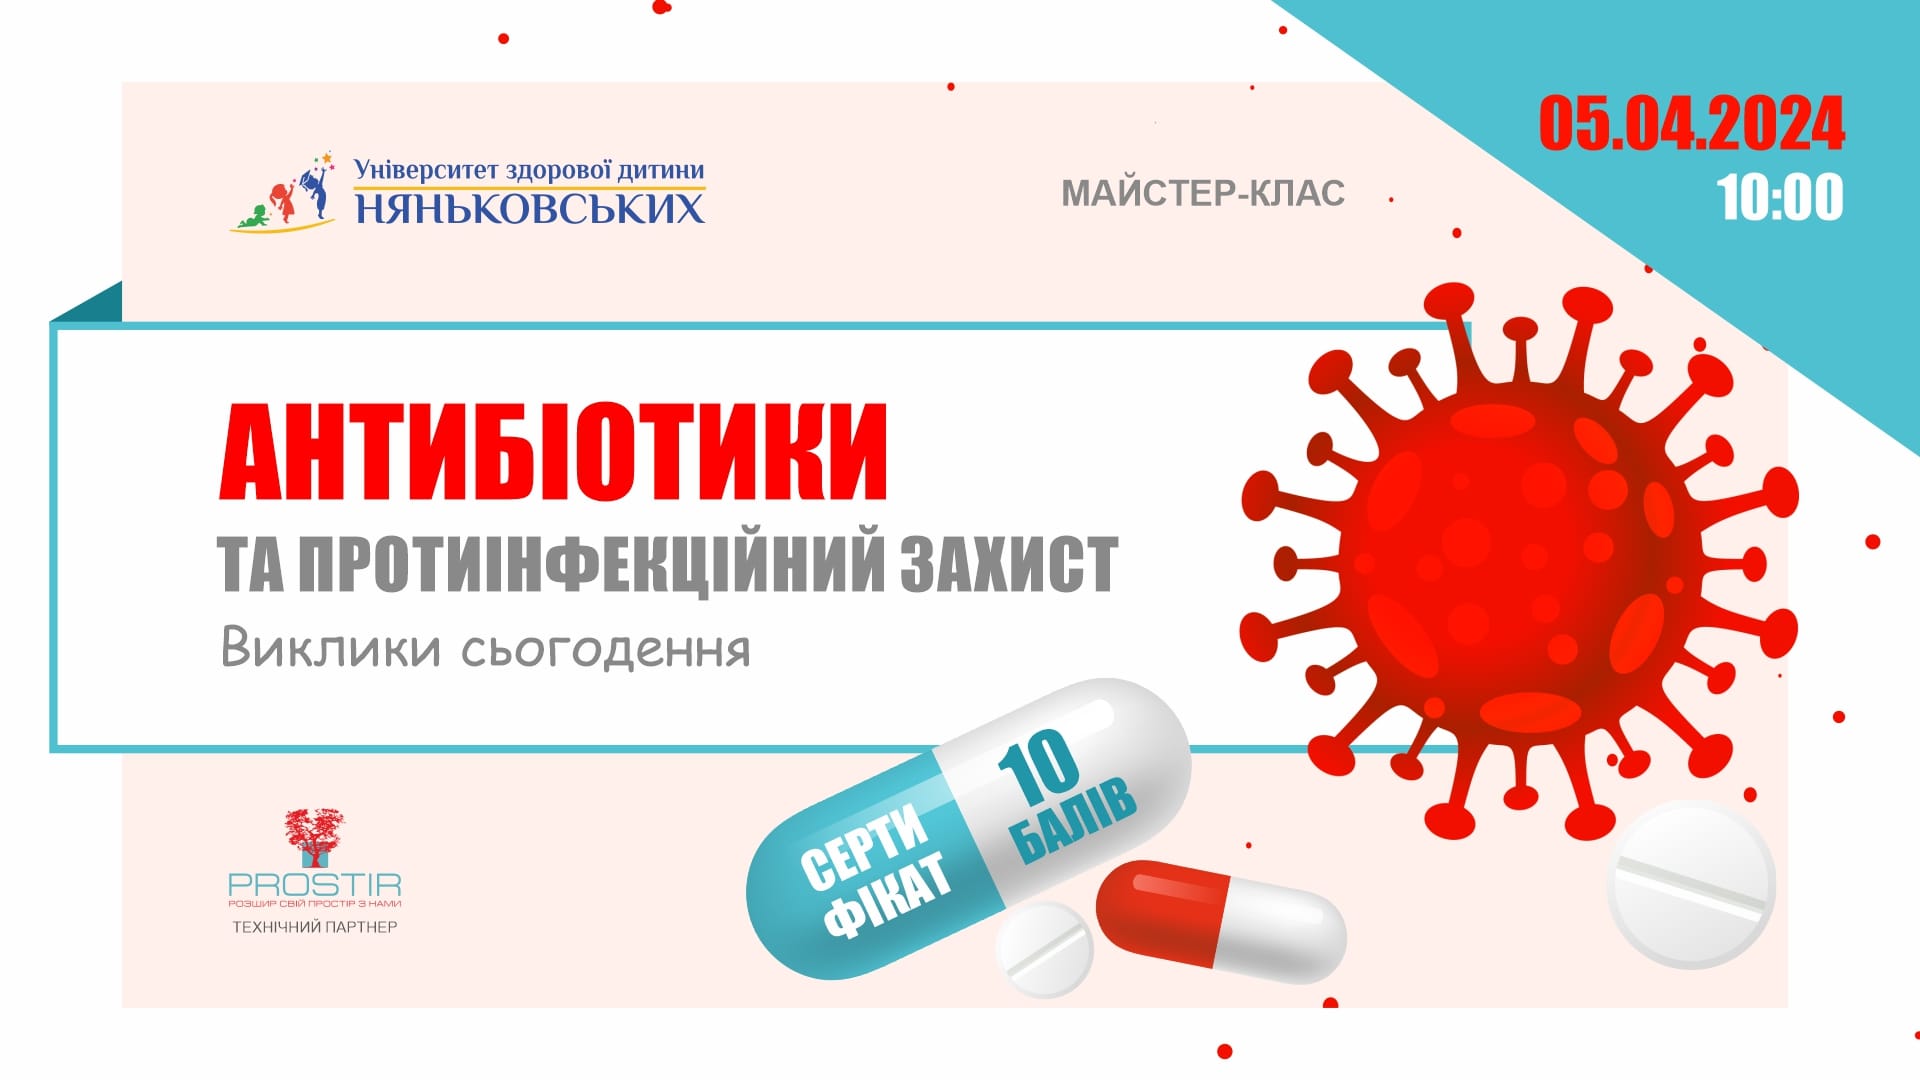 Конференція педіатрична  2024 з балами антибіотики та протиінфекційний захист Няньковських